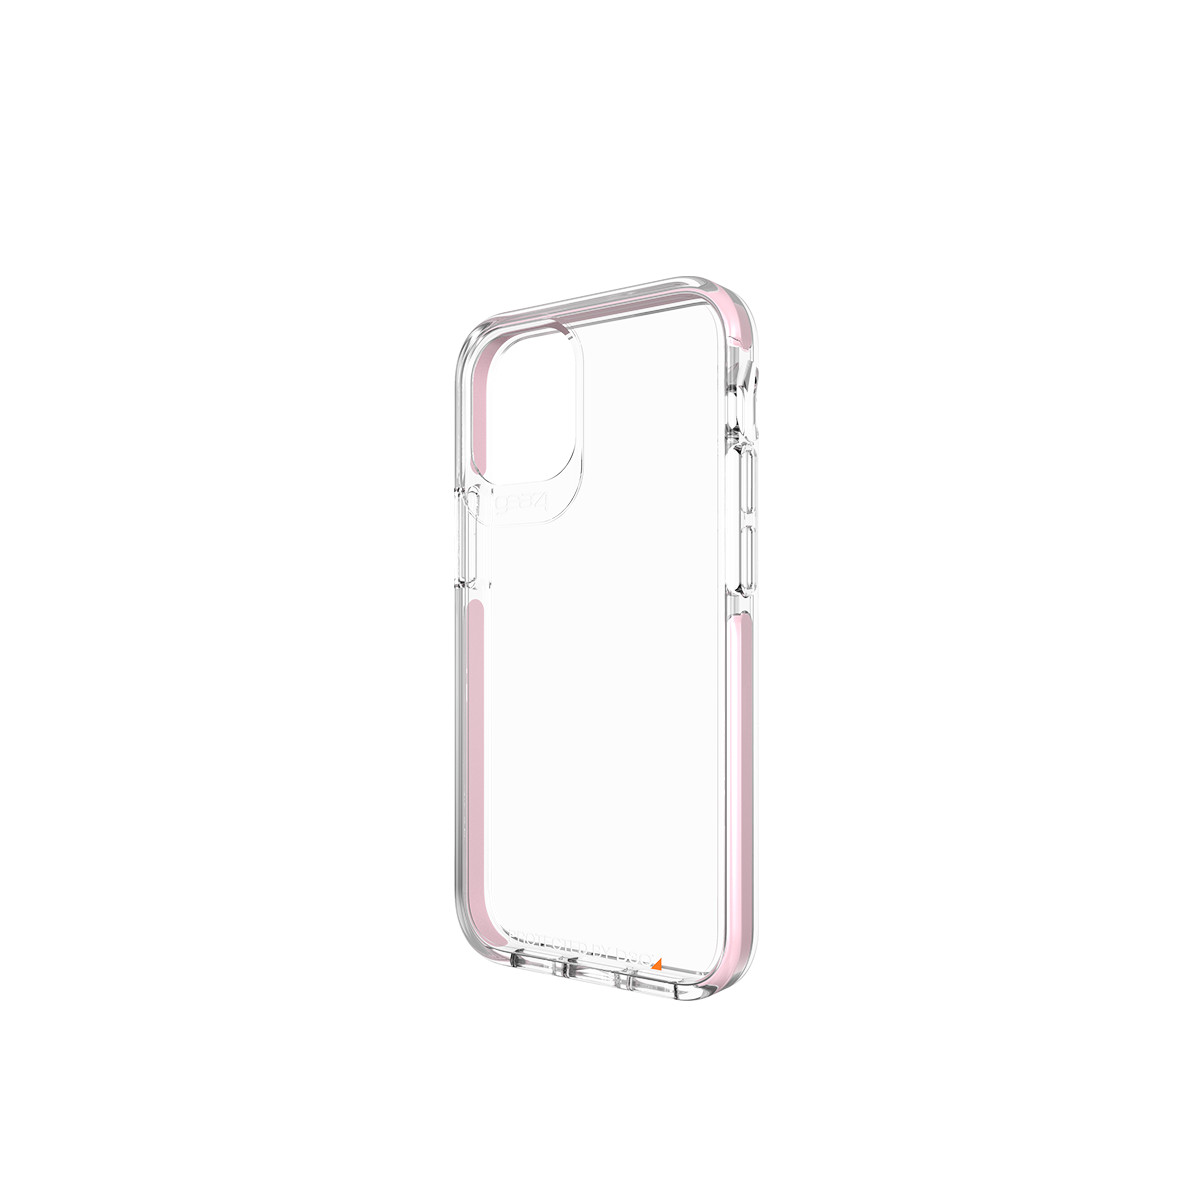 Ốp lưng Gear4 Piccadilly iPhone - Công nghệ chống sốc độc quyền D3O, kháng khuẩn, tương thích tốt với sóng 5G - Hàng chính hãng - Rose Gold - iPhone 12/12 Pro